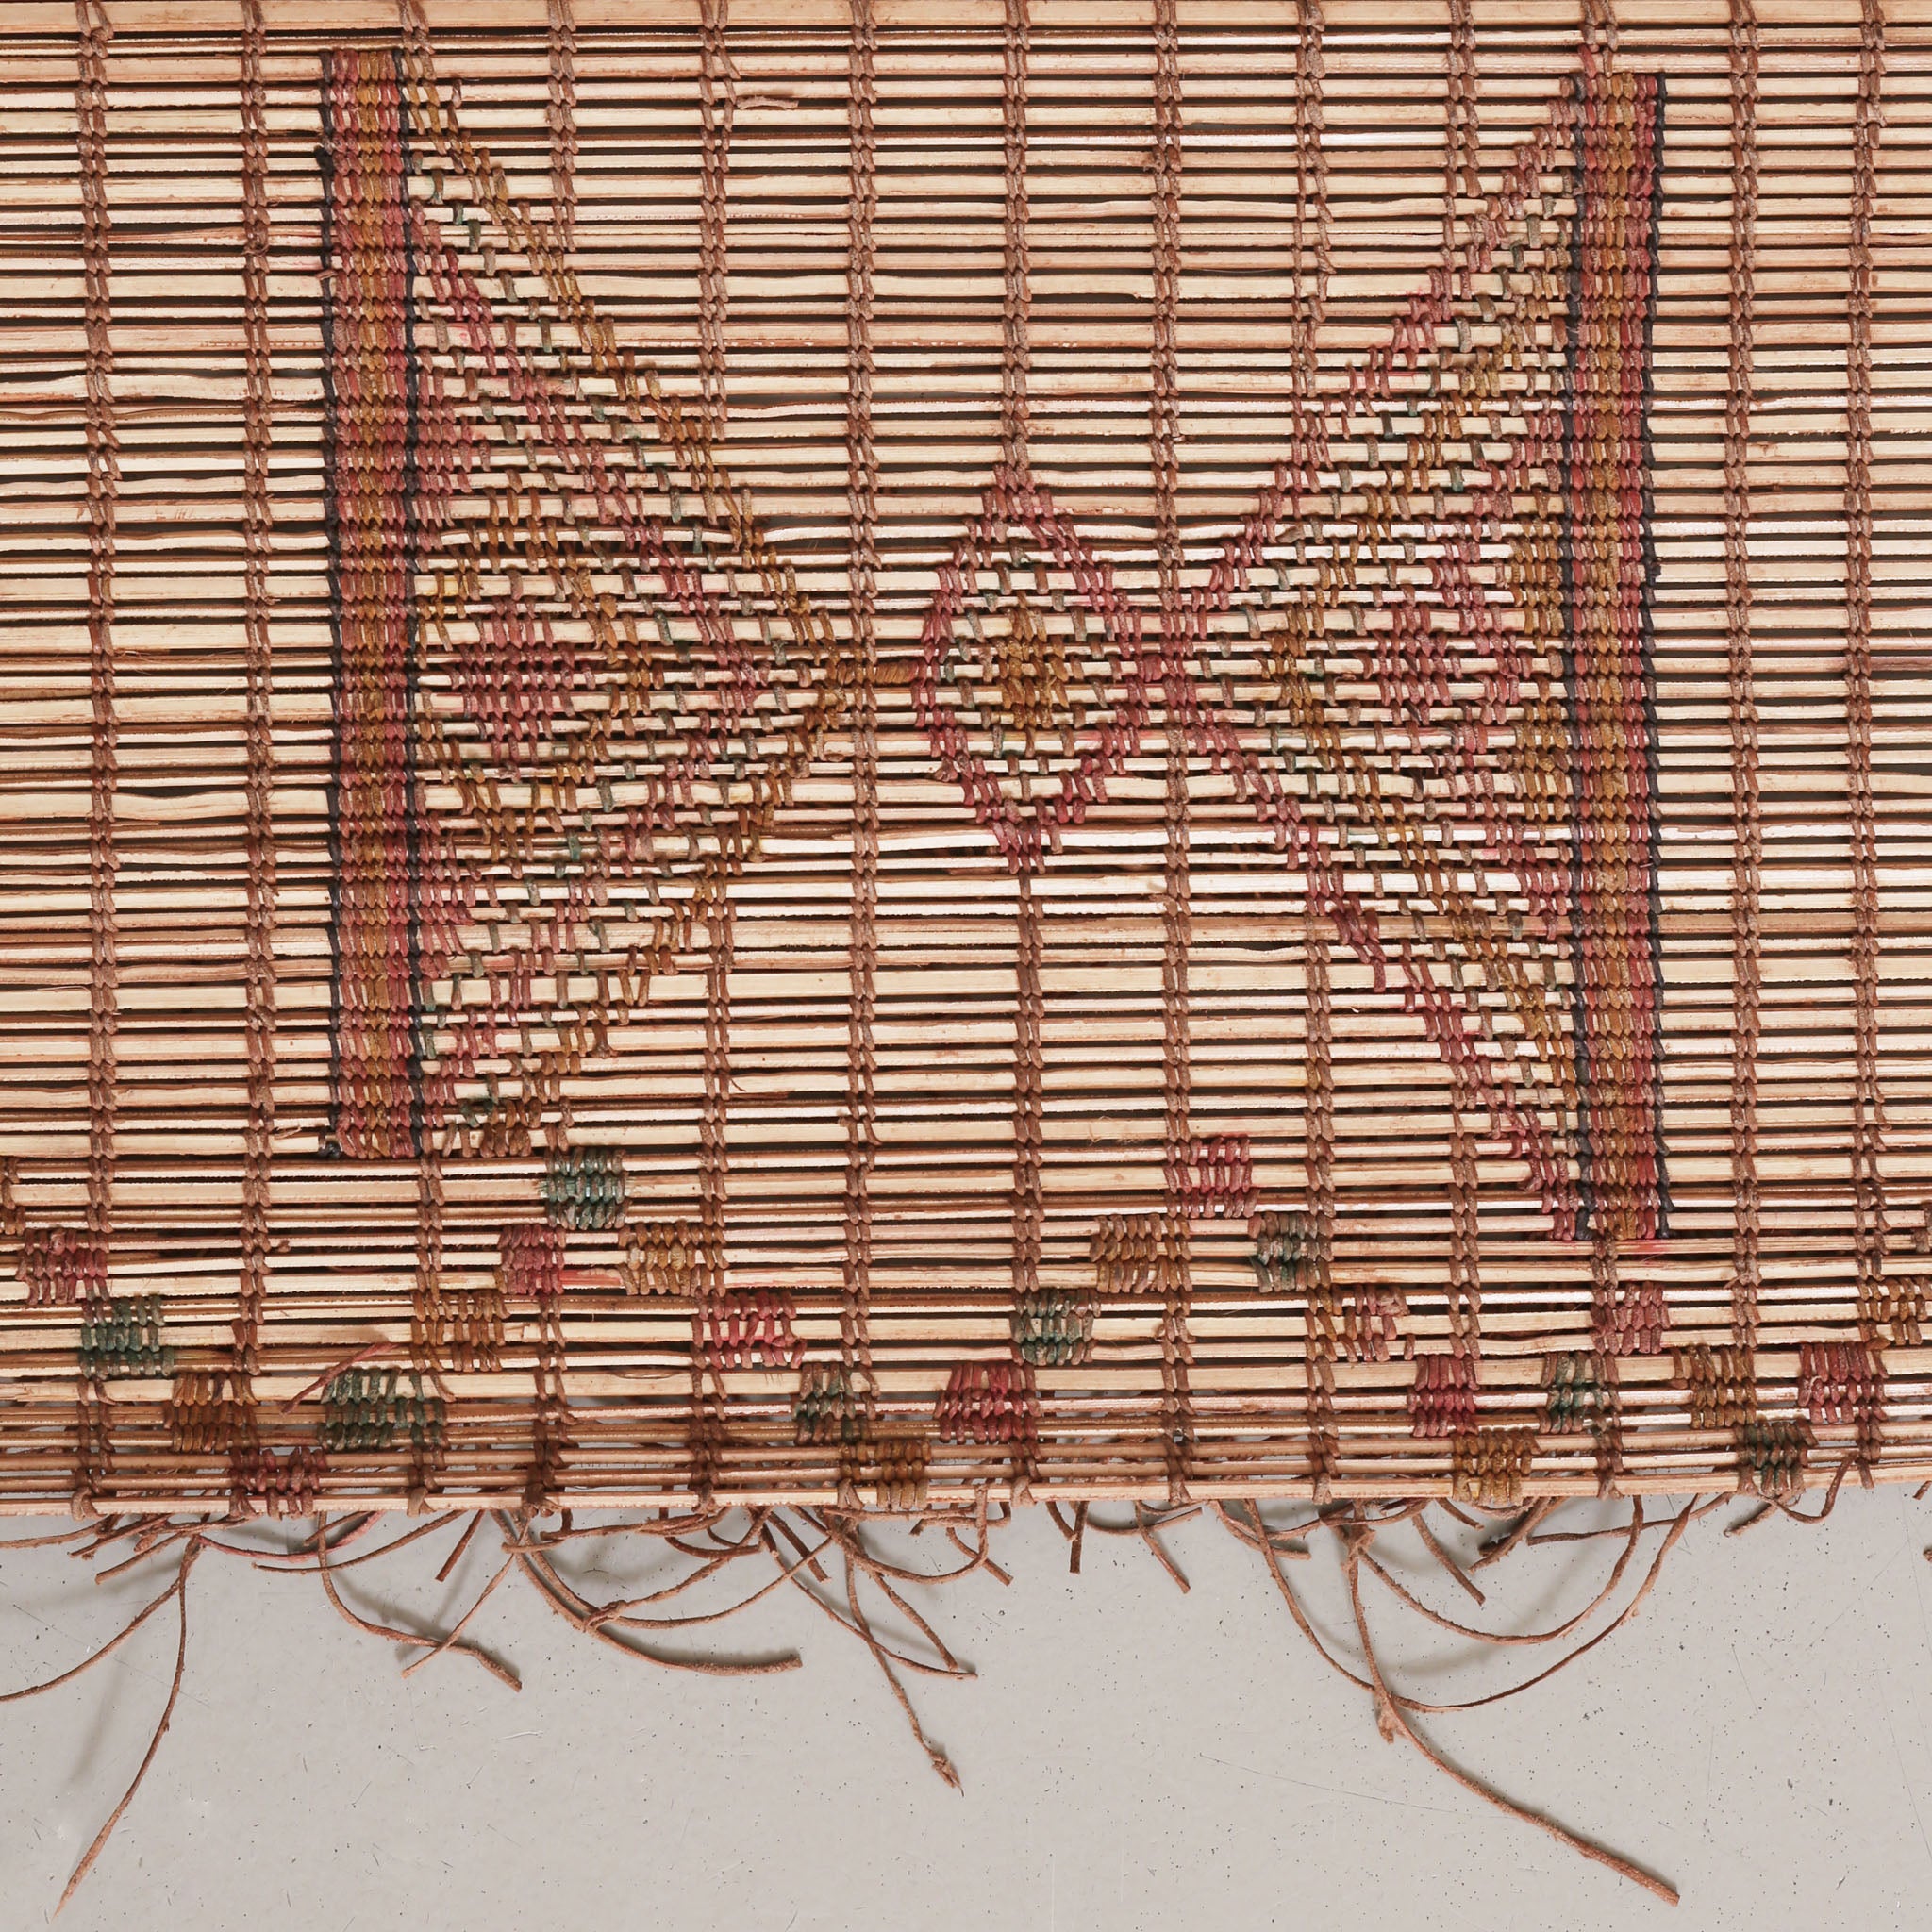 dettaglio di un simbolo che sembra una clessidra lavorato intrecciando fili di cuoio colorato su una stuioa